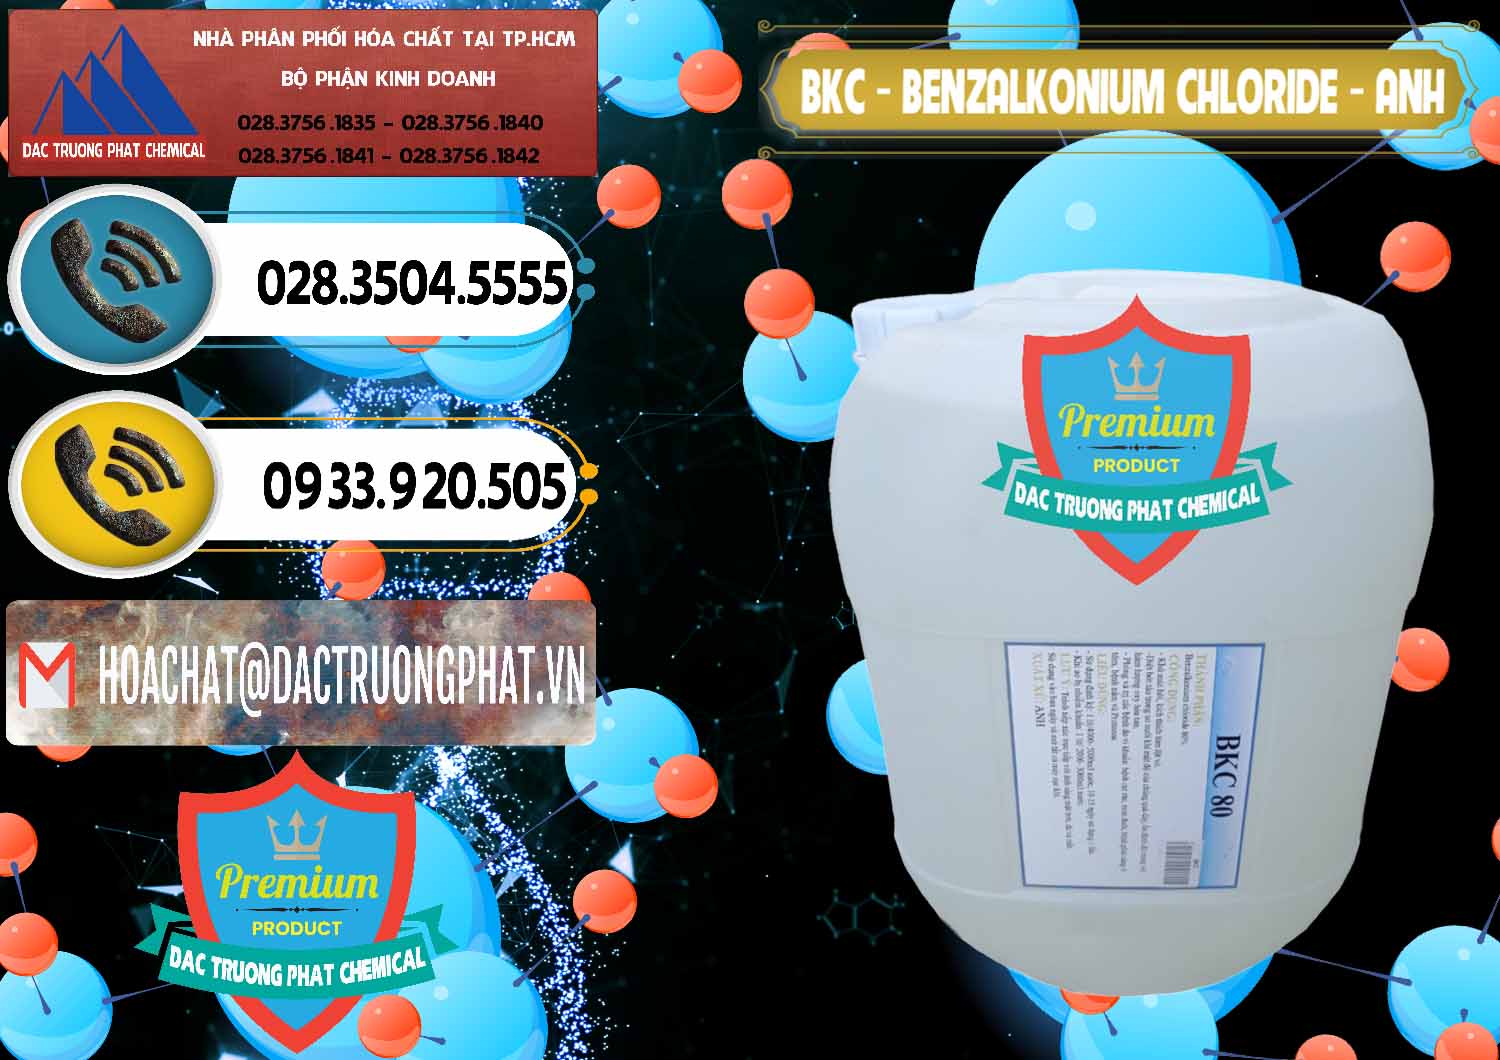 Nơi nhập khẩu - bán BKC - Benzalkonium Chloride Anh Quốc Uk Kingdoms - 0415 - Cty chuyên cung cấp và nhập khẩu hóa chất tại TP.HCM - hoachatdetnhuom.vn